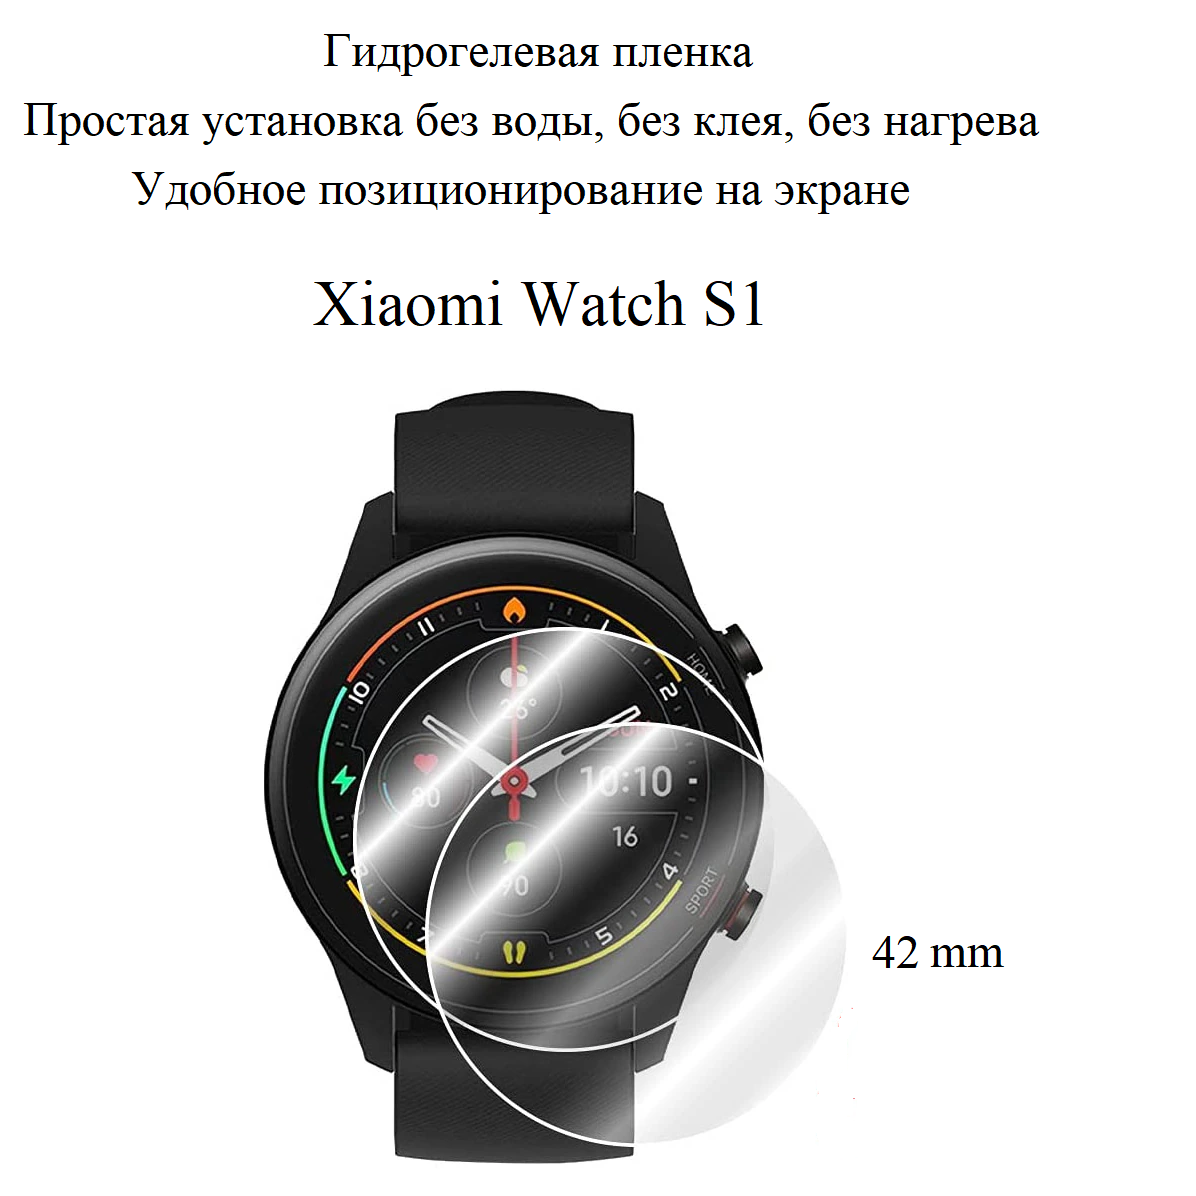 Глянцевая гидрогелевая пленка hoco. на экран смарт-часов Xiaomi Watch S1 (2шт.)